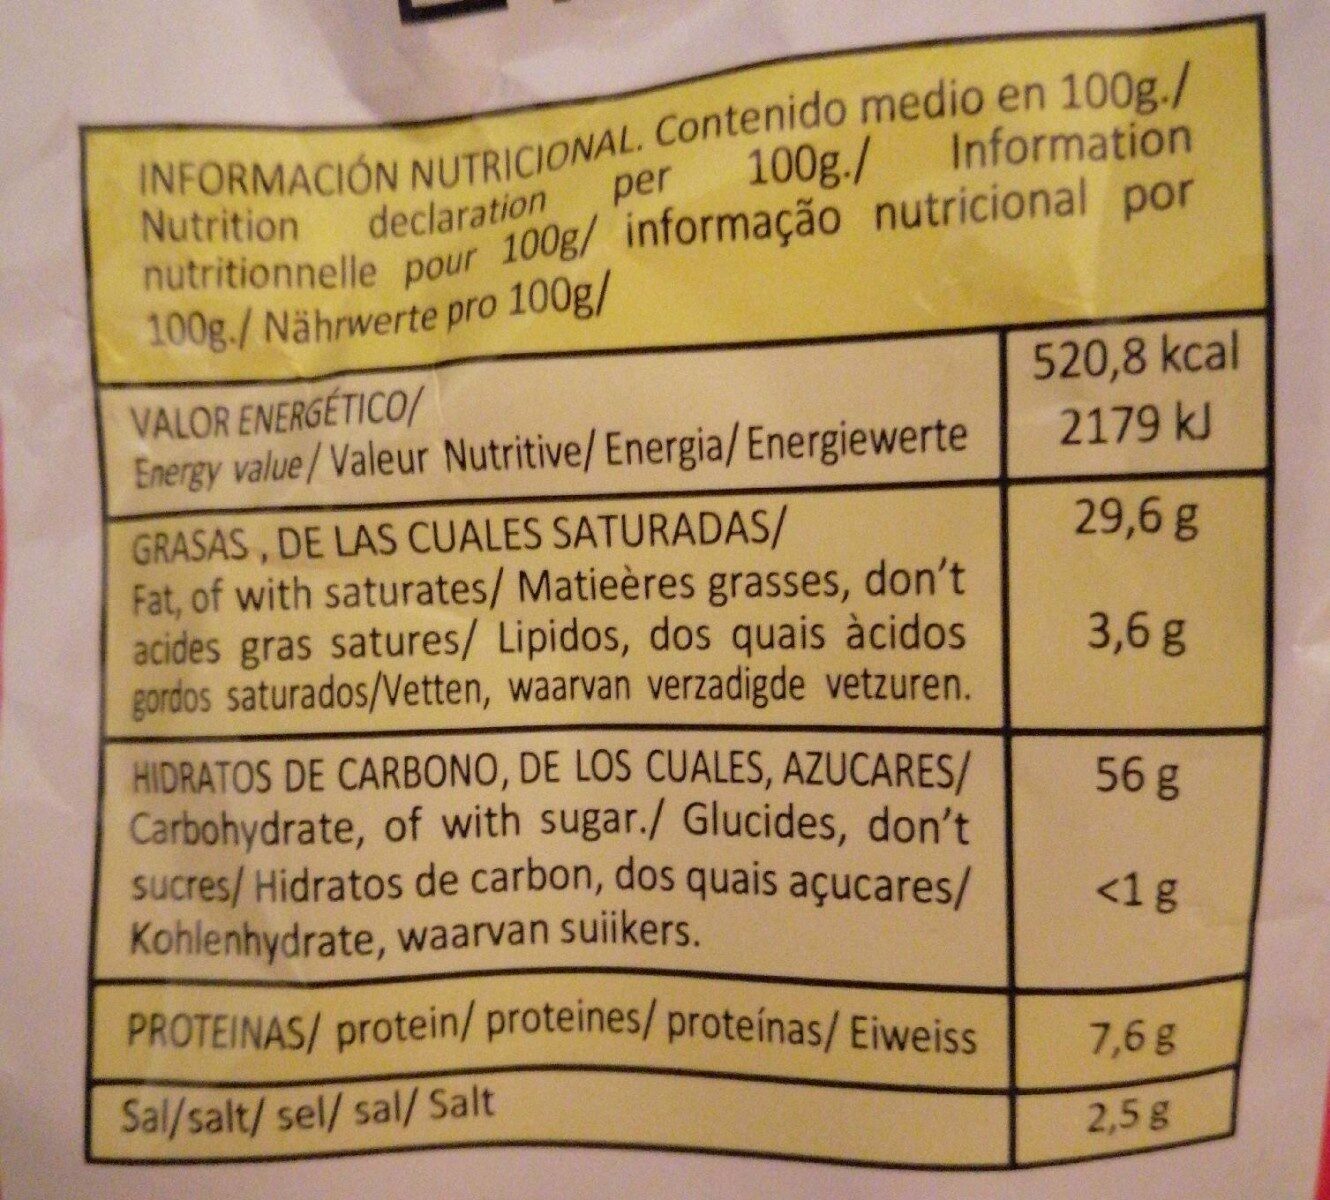 Patas fritas - Informació nutricional - es